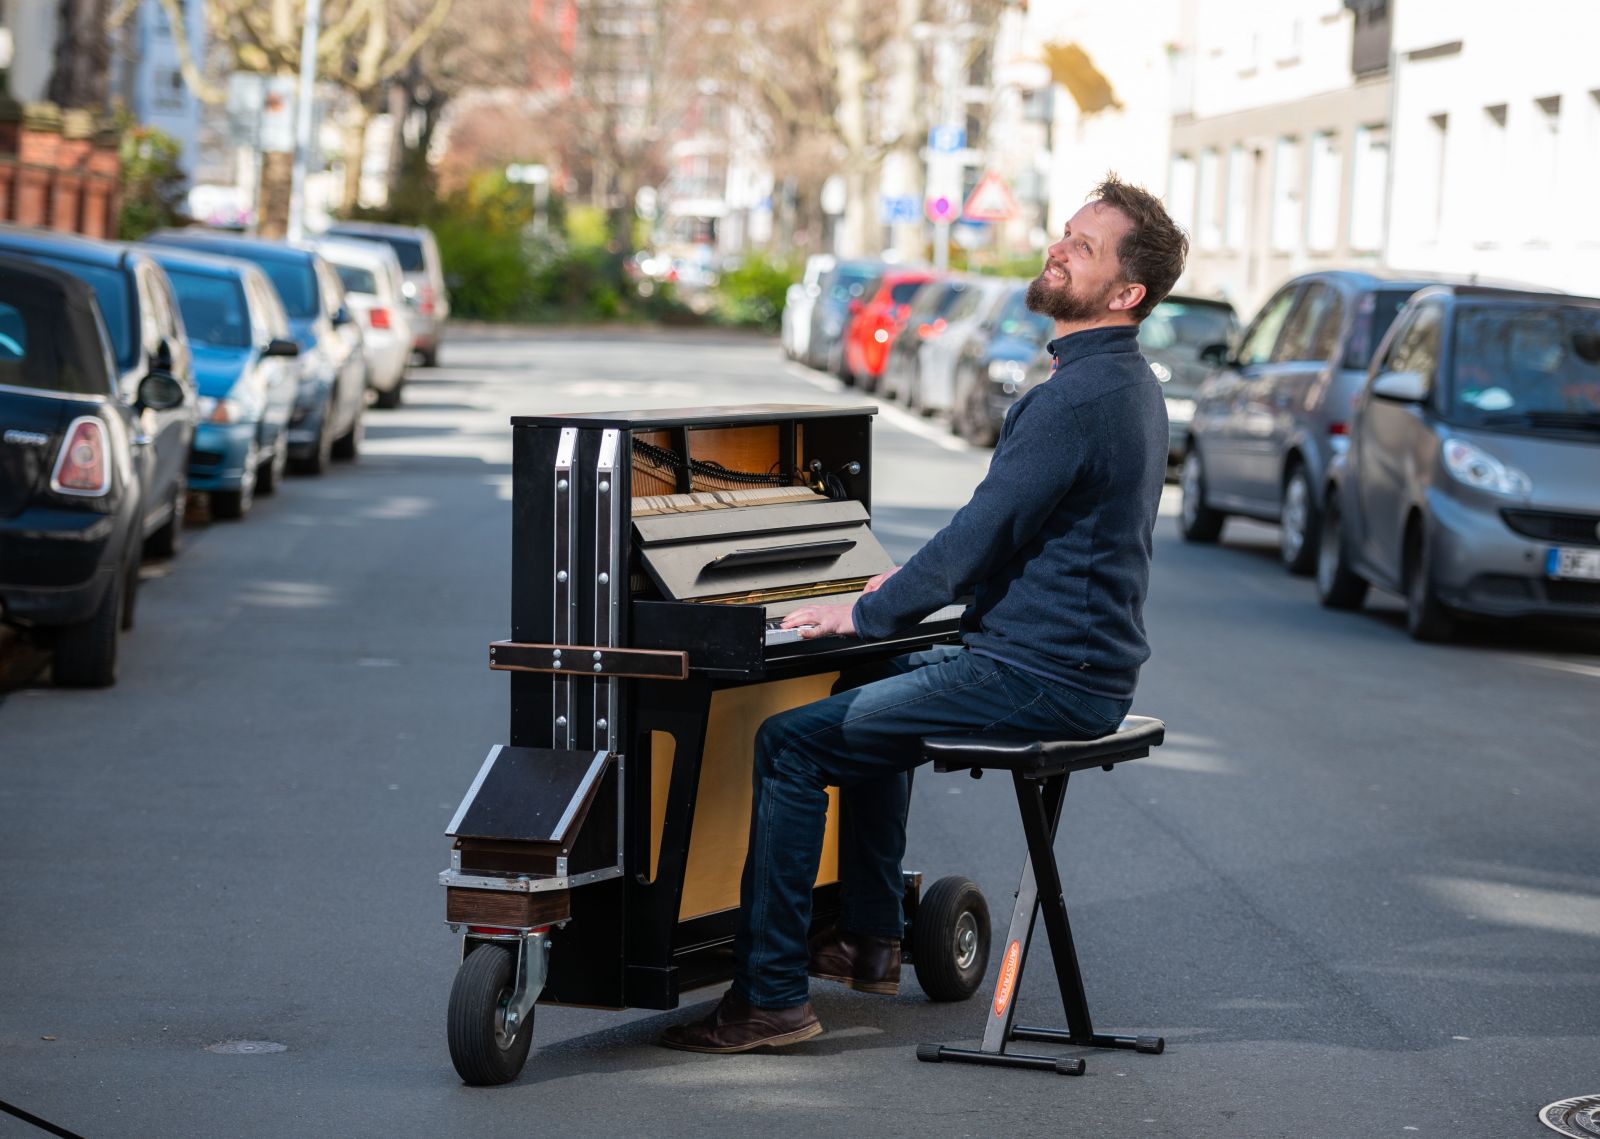 Hudobník vytiahol klavír na ulicu a hrá pre svojich susedov na strede ulice. Aj takto vyzerá koronavírusová kríza